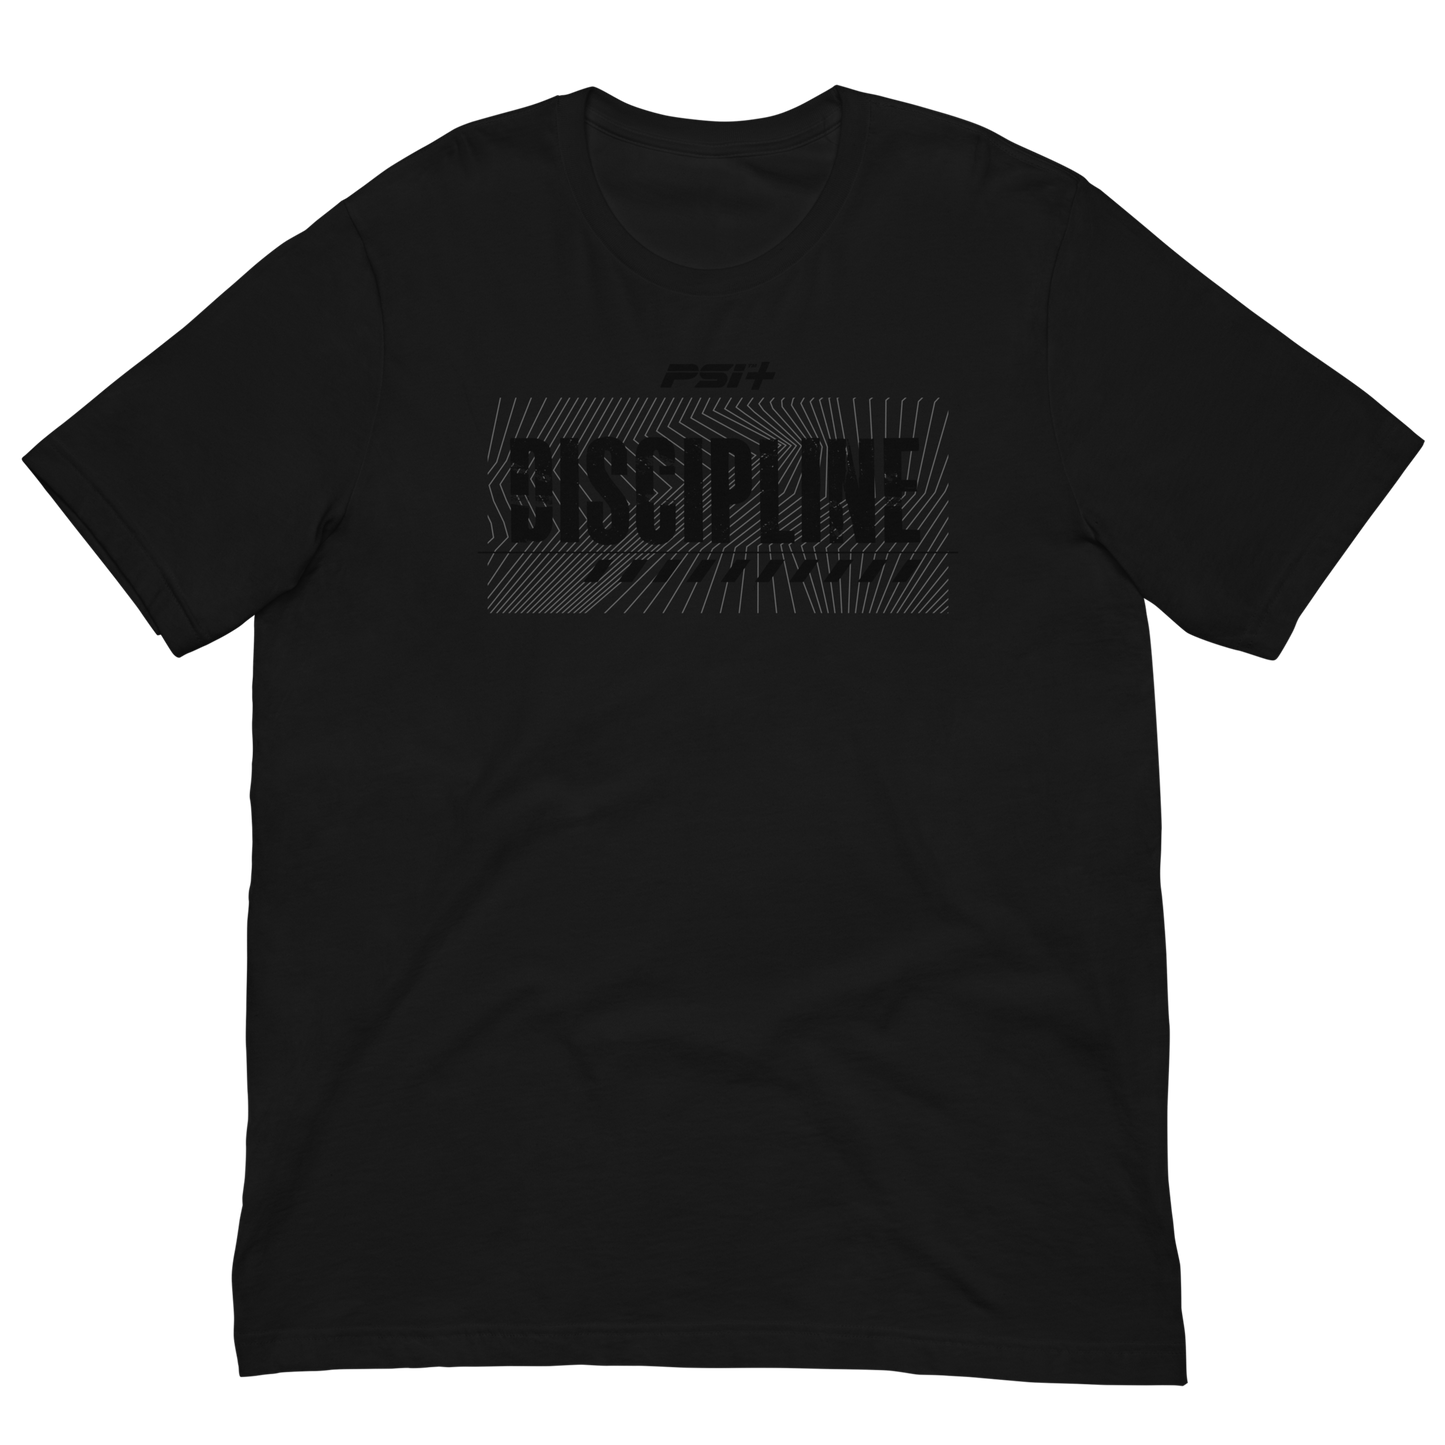 PSI Discipline (Black)